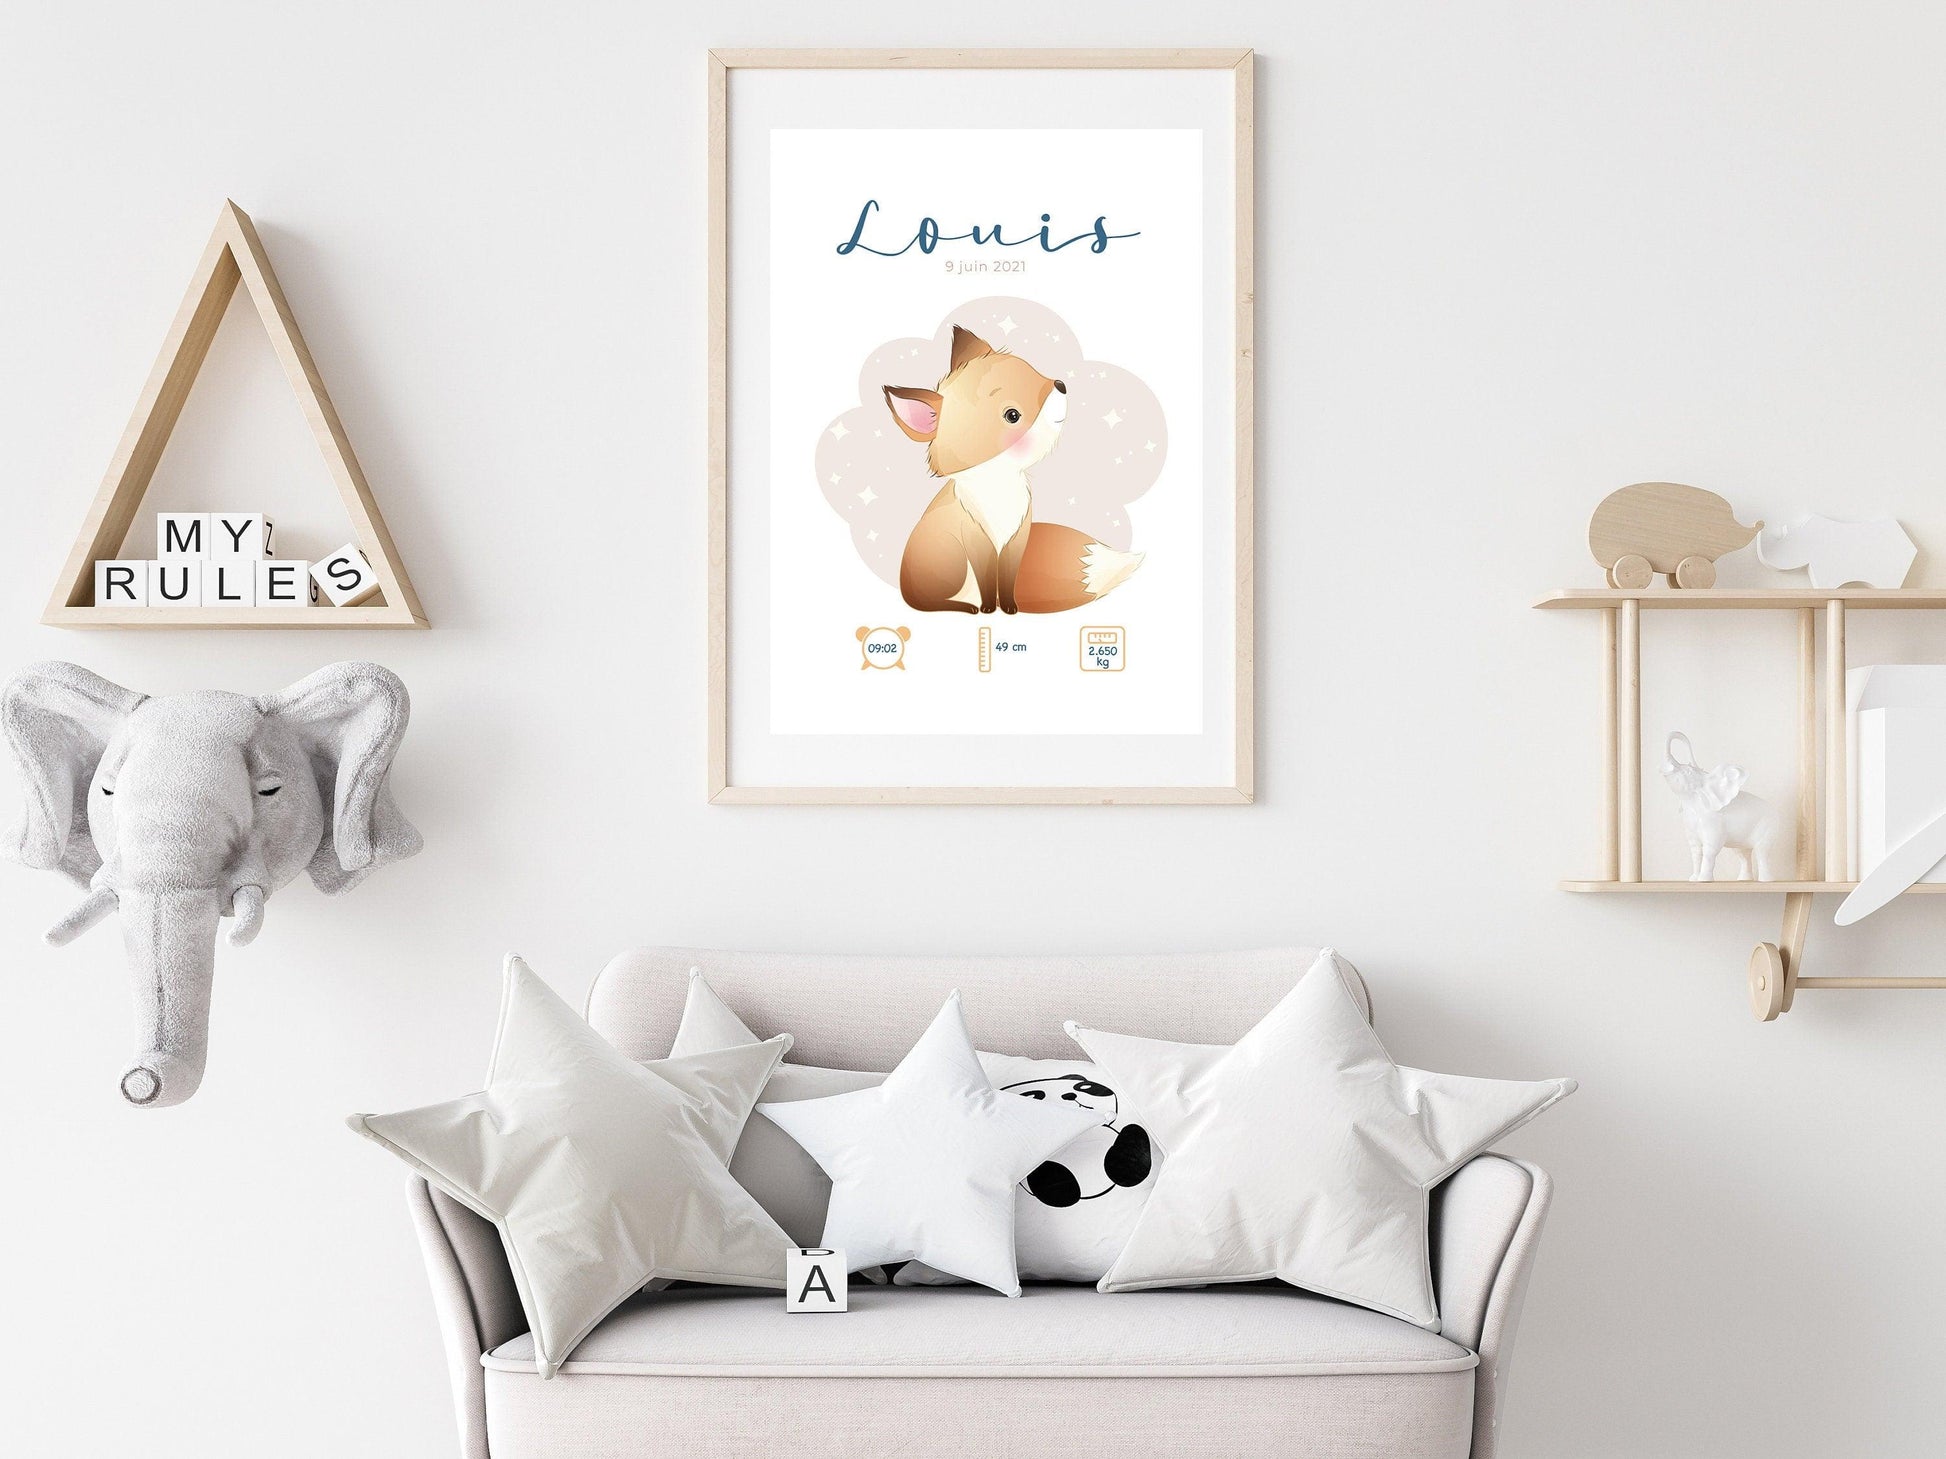 Affiche de naissance personnalisée "Renard" - Affiche bébé souvenir - Prénom, poids, taille et heure - Cadeau naissance anniversaire bebe - Imagine.affiche